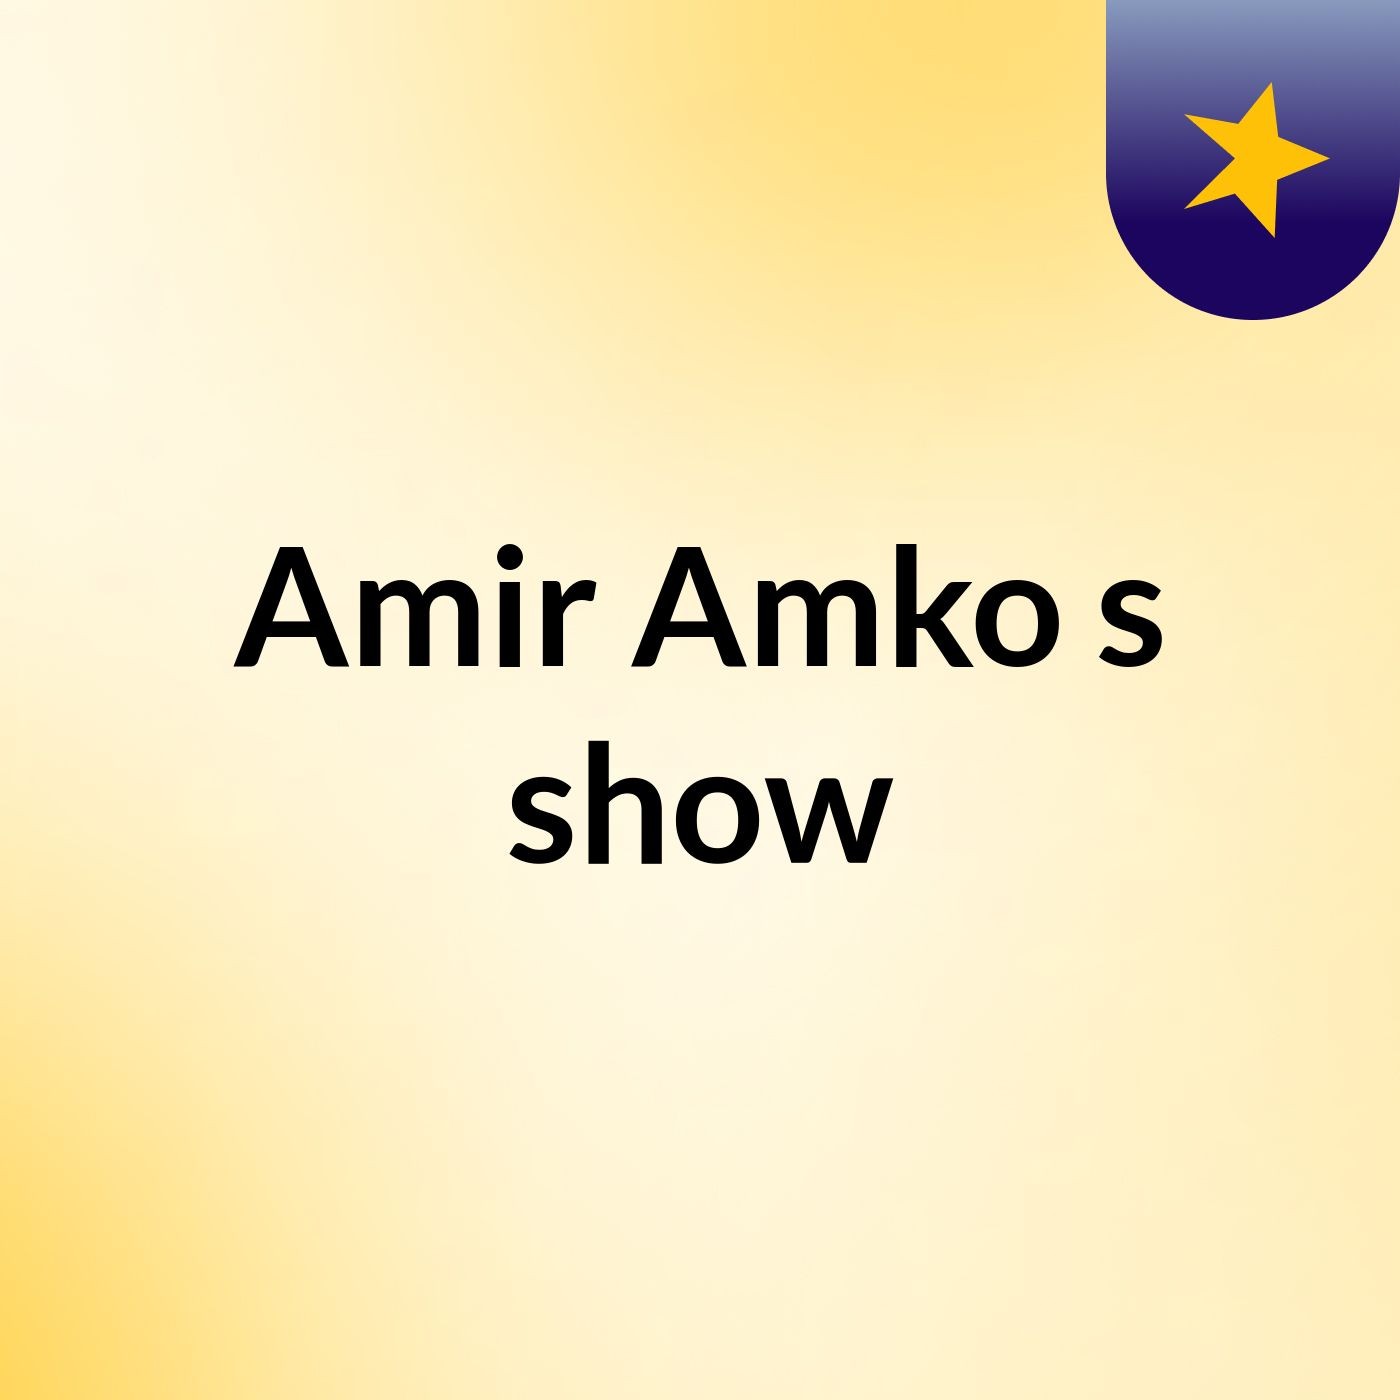 Amir Amko's show